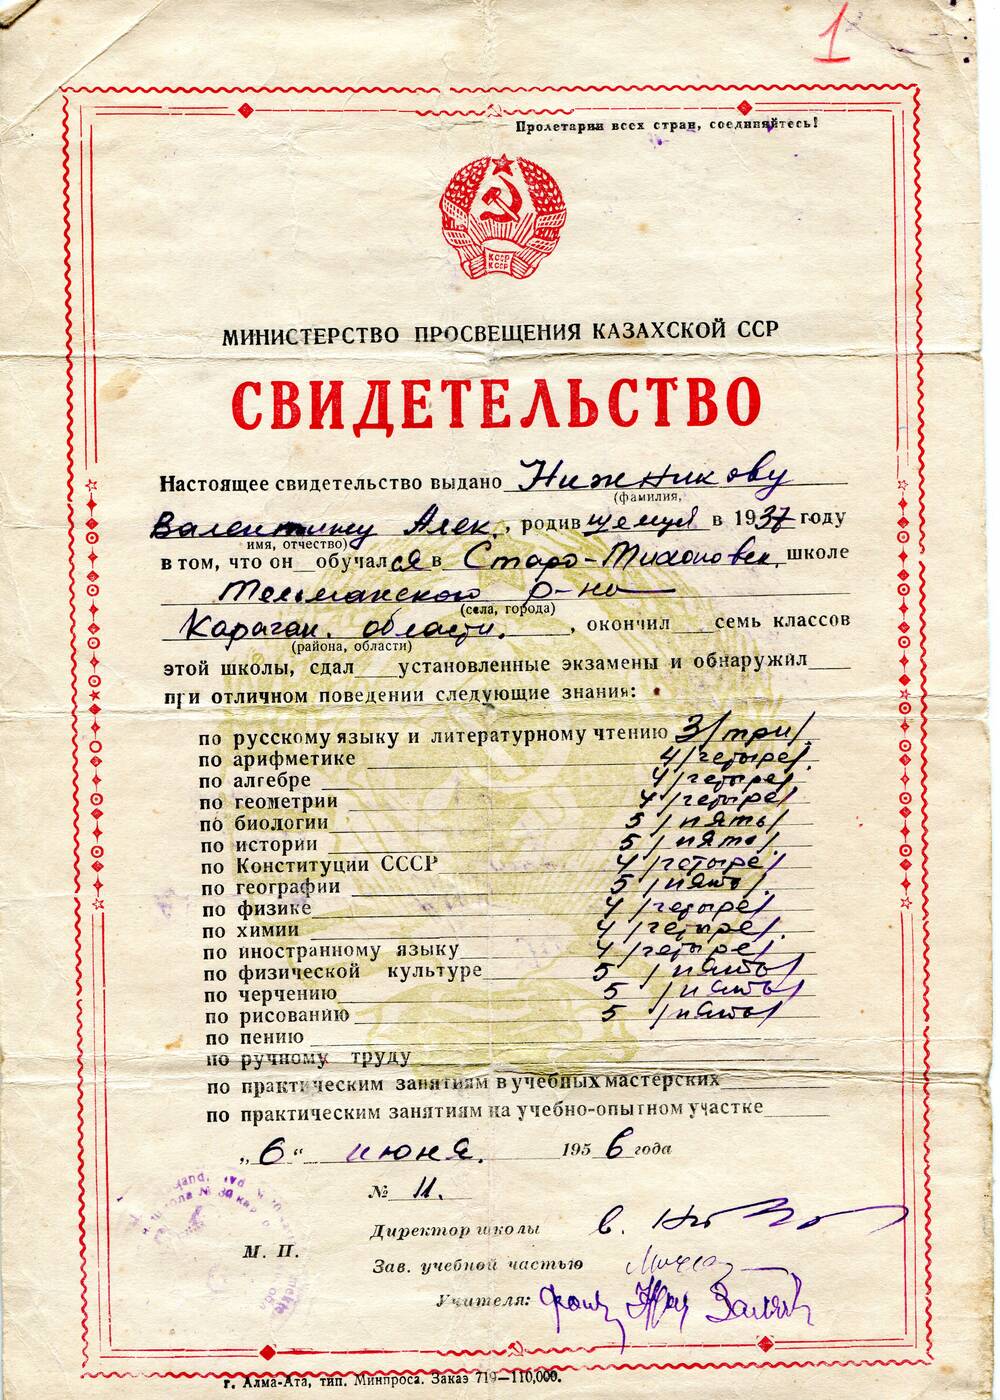 Свидетельство №11 выдано Нижникову Валентину Алек., родившемуся в 1937 году, об окончании Старо-Тихоновской школы Тельманского р-на Карагандинской области Казахской ССР.